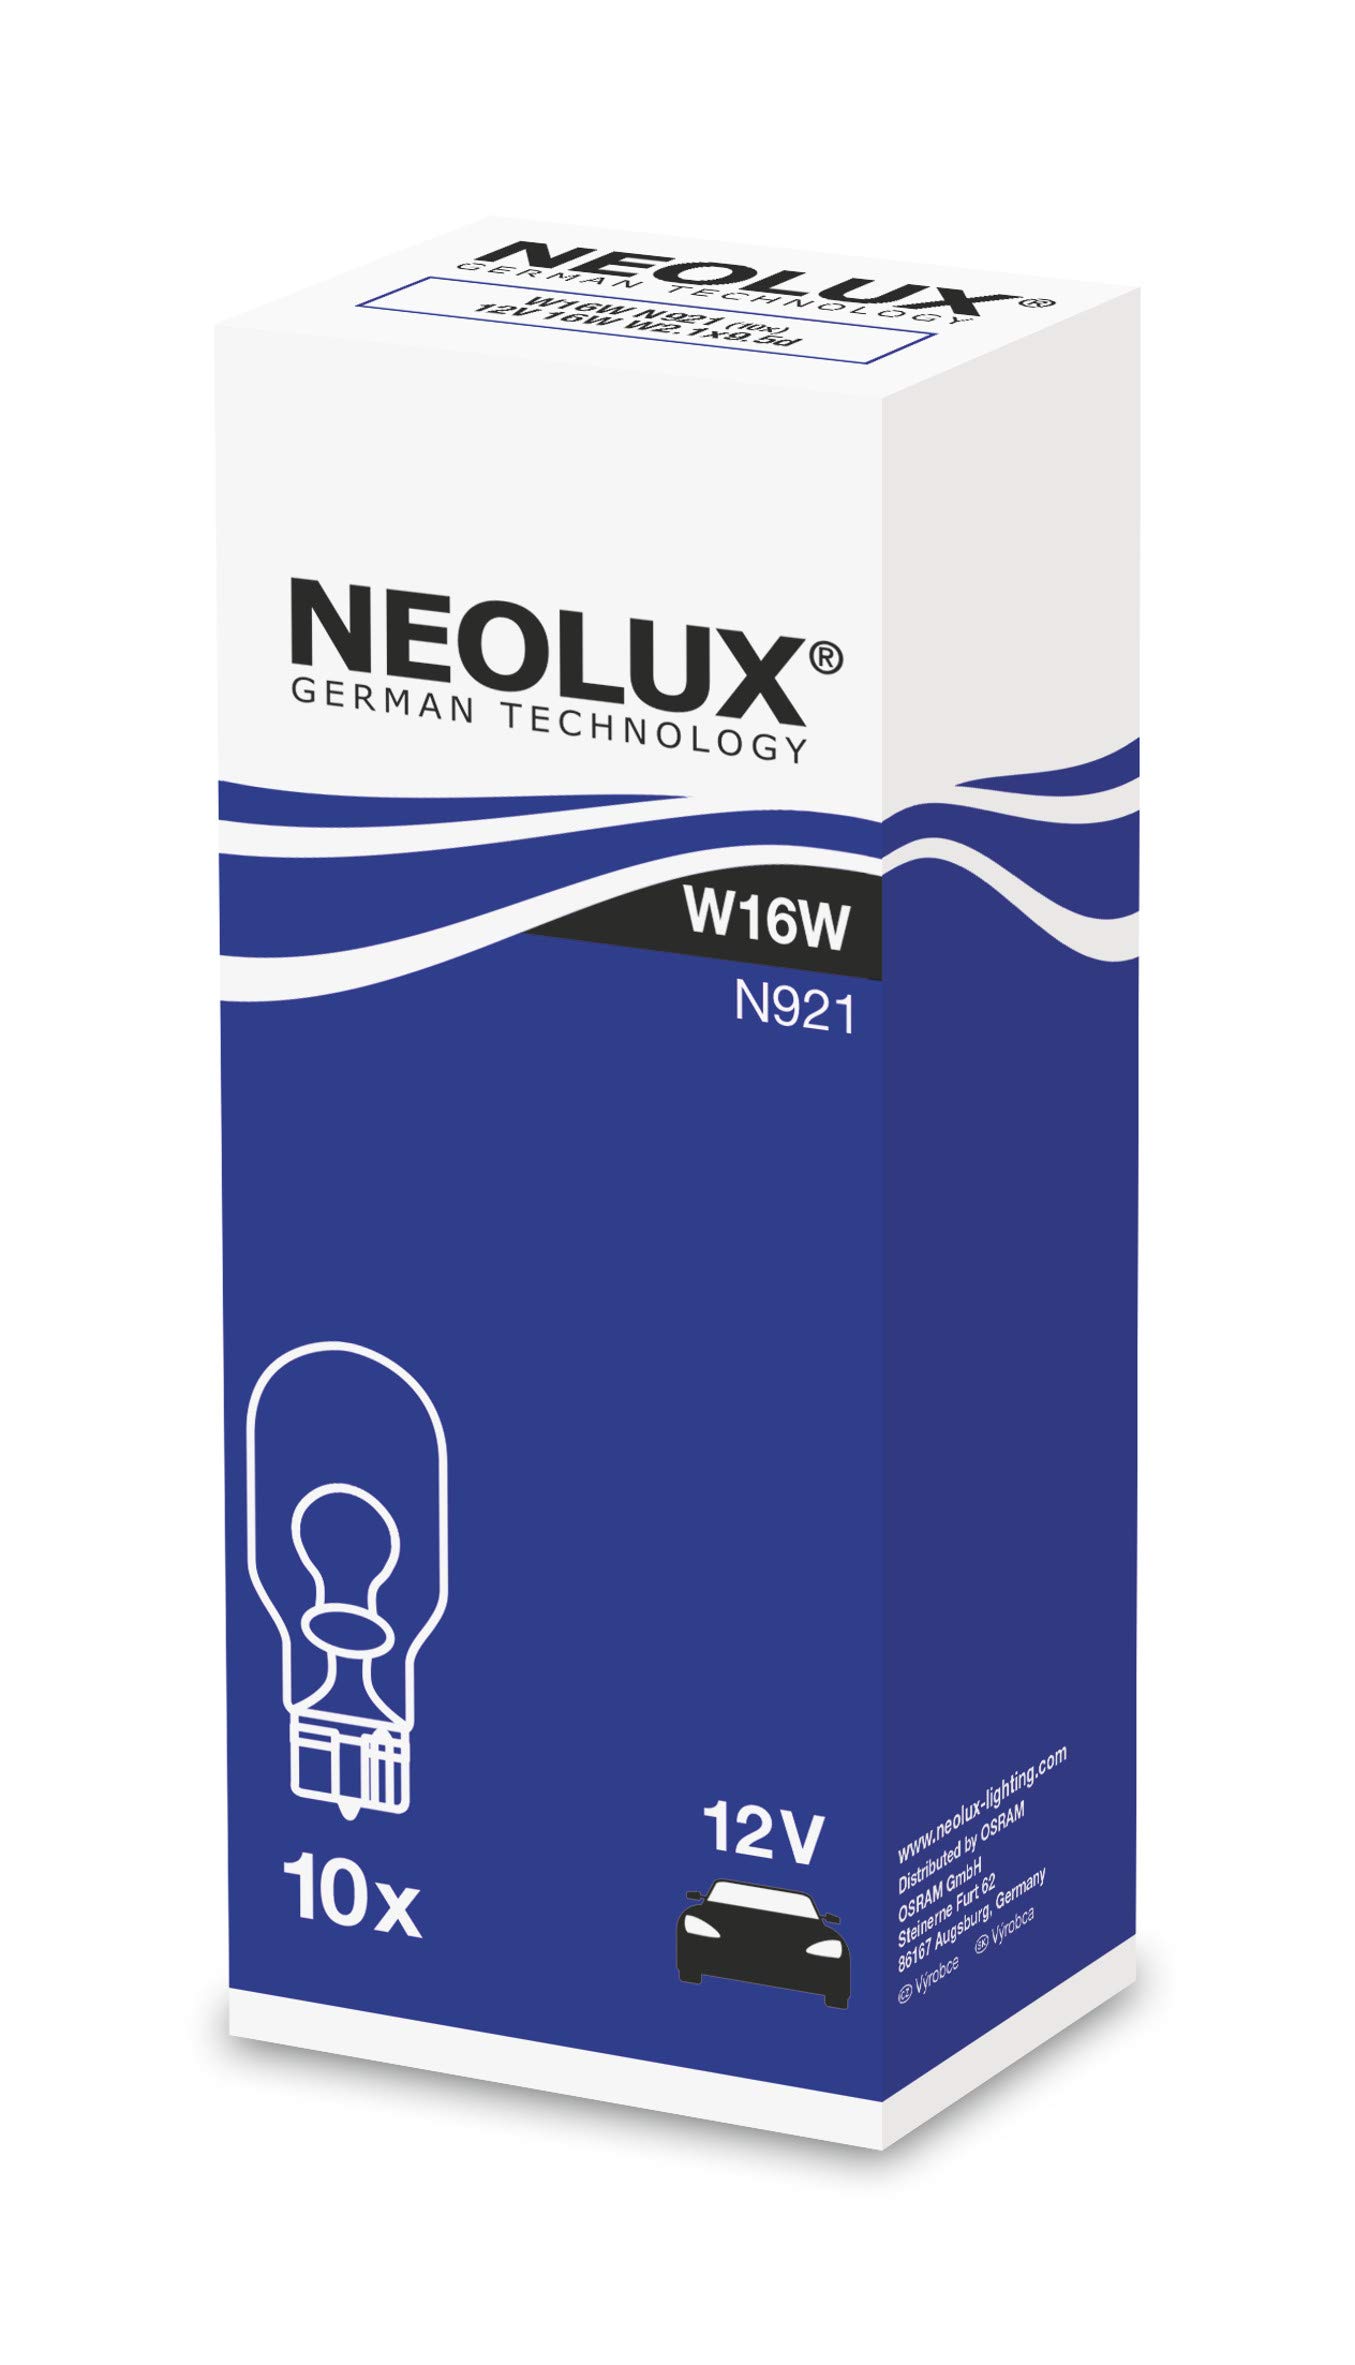 NEOLUX Standard W16W Signallampe für Auto und Motorrad, N921, 12 V, 16 W, 10 Stück von NEOLUX